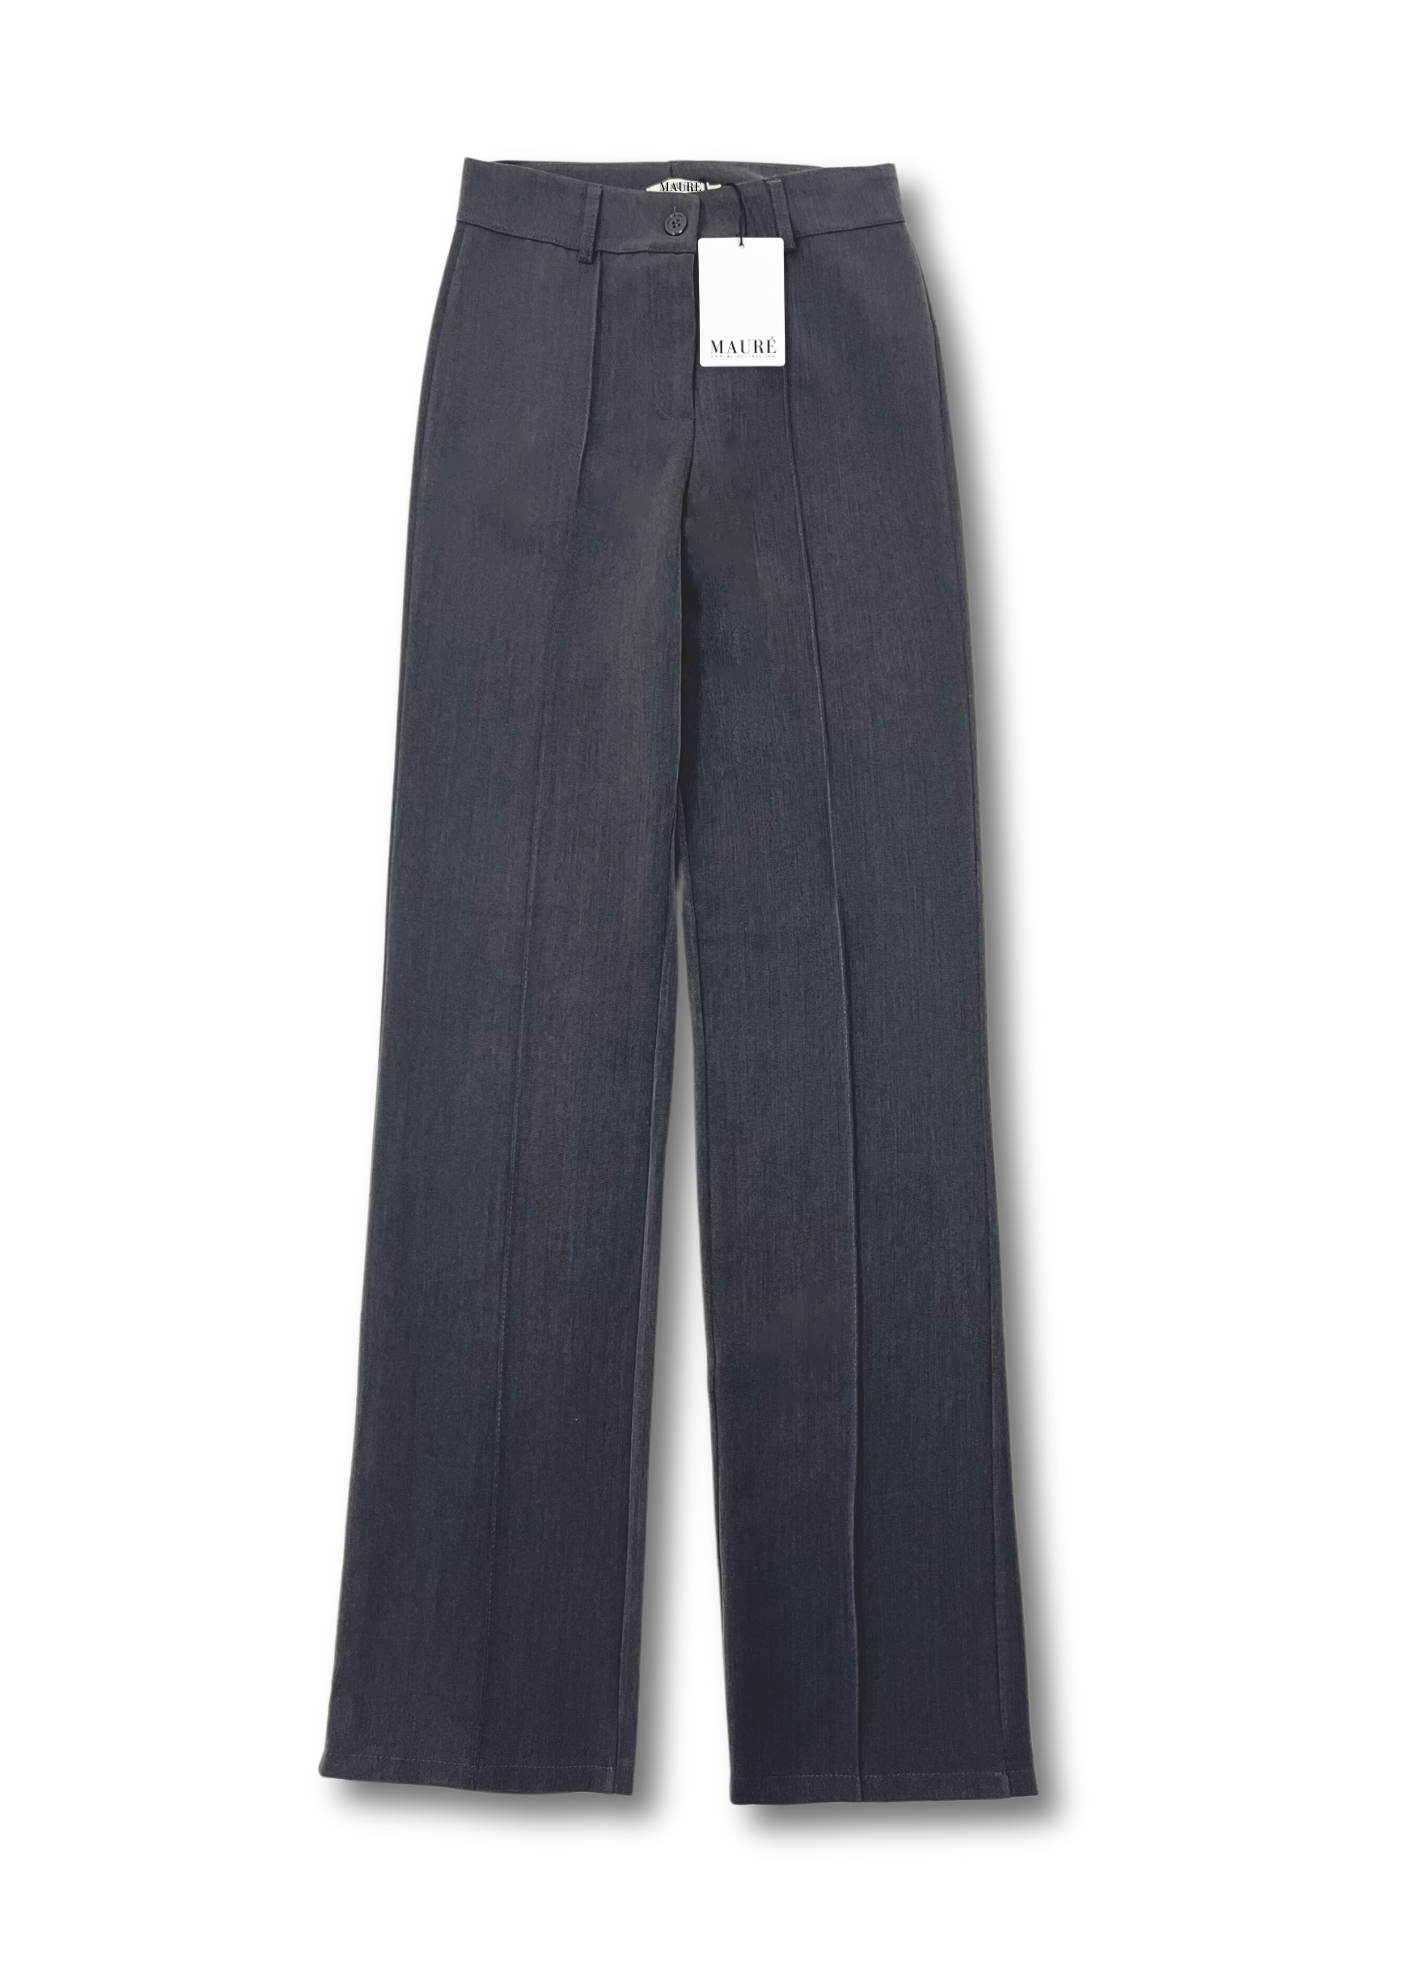 Pantalon droit avec pliage gris foncé délavé (TALL)